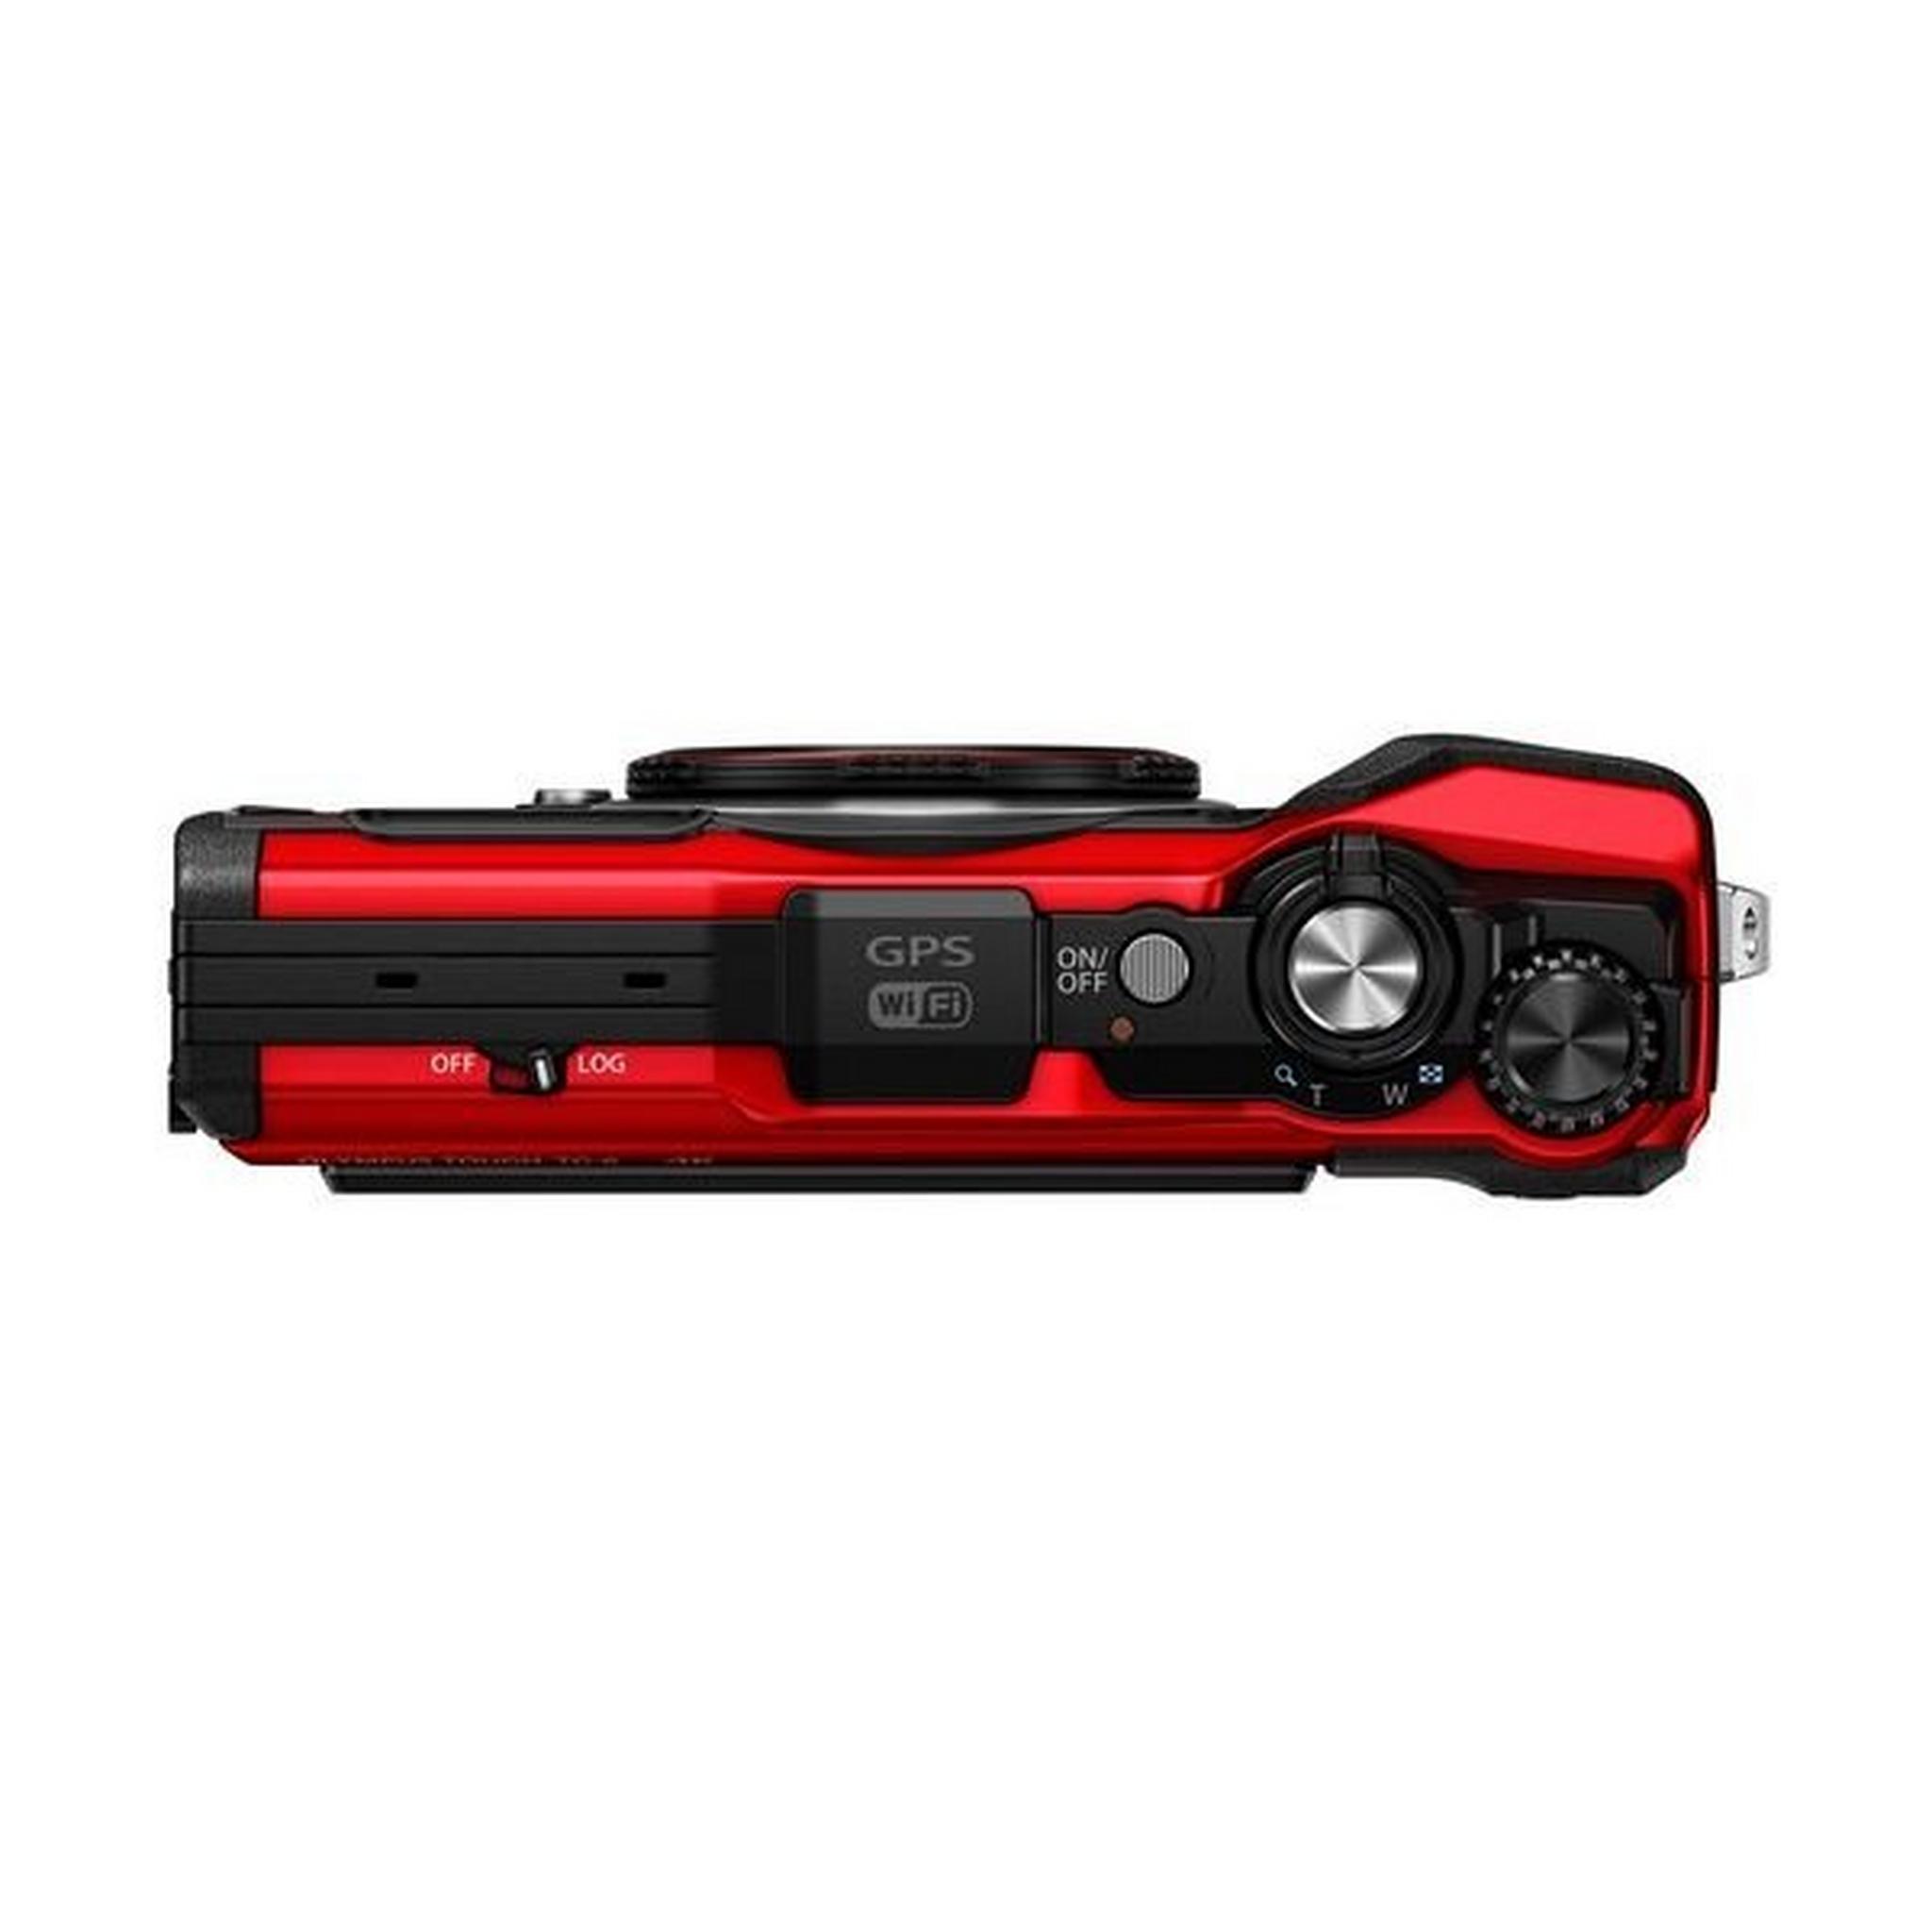 كاميرا رقمية بدقة 12 ميجابكسل من أوليمبوس توغ TG-6 – أحمر